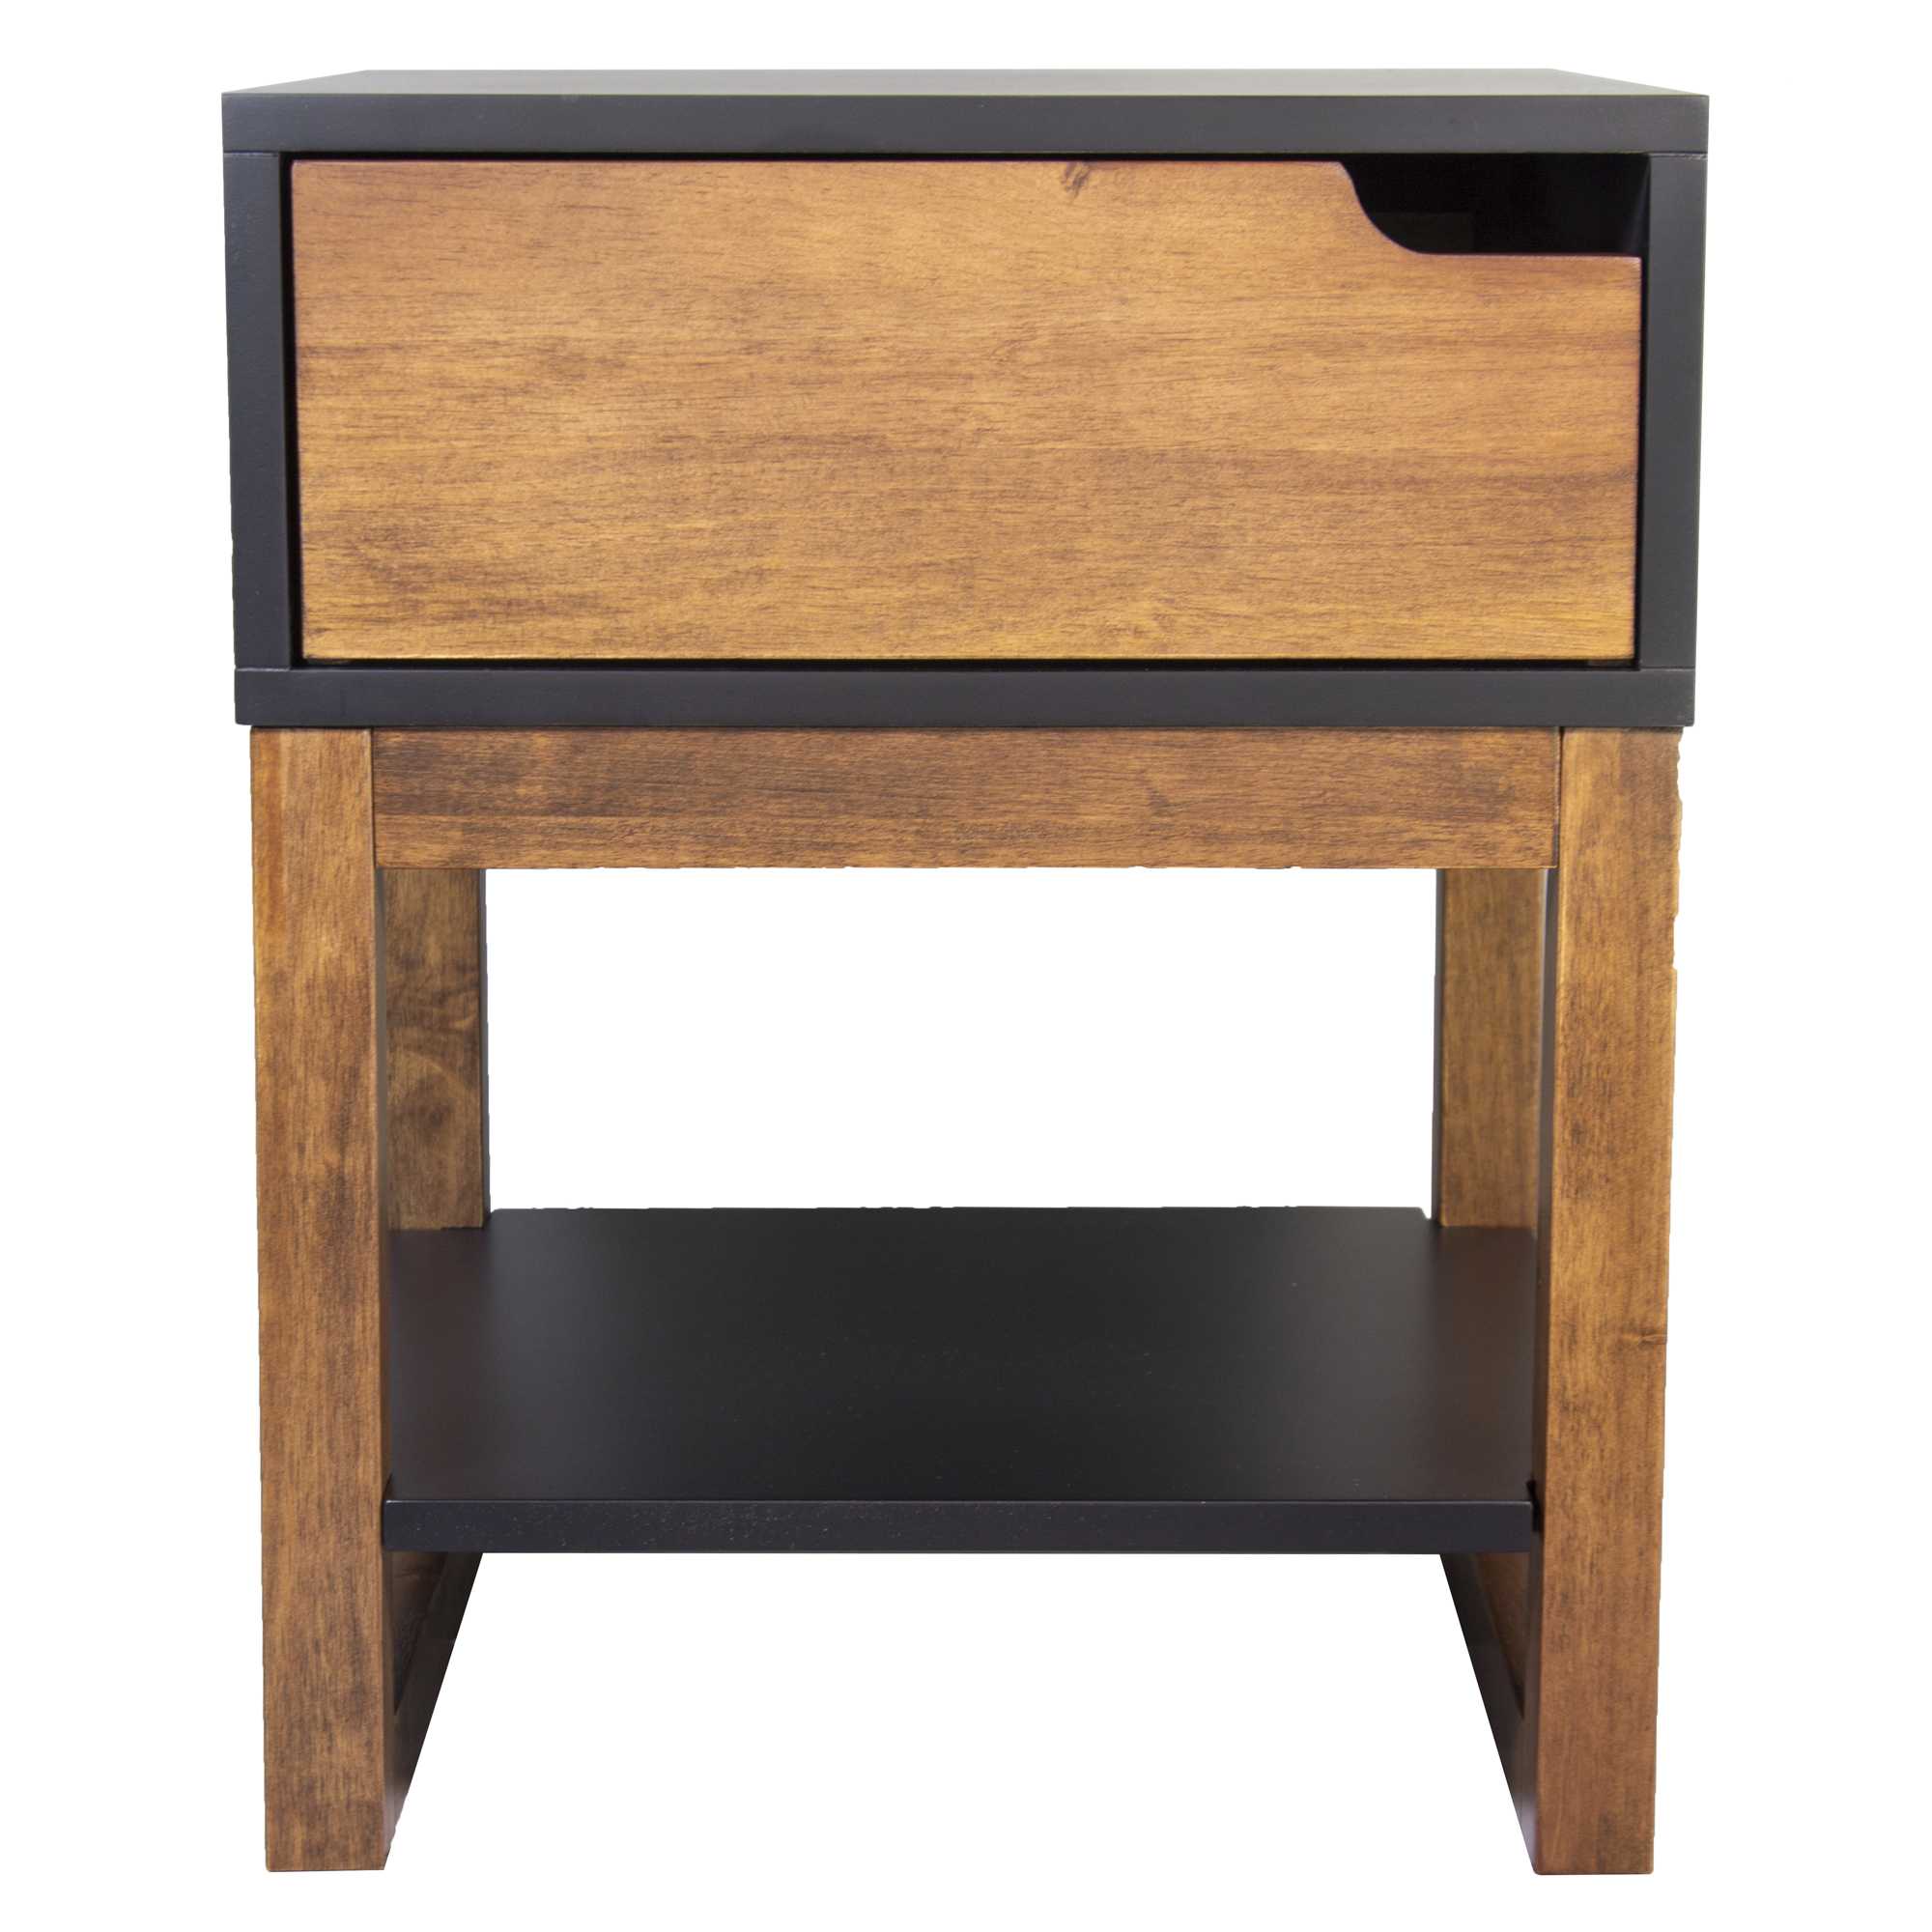 16" X 16" X 20" Black & Mocha Solid Wood One Drawer Side Table w/ Shelf